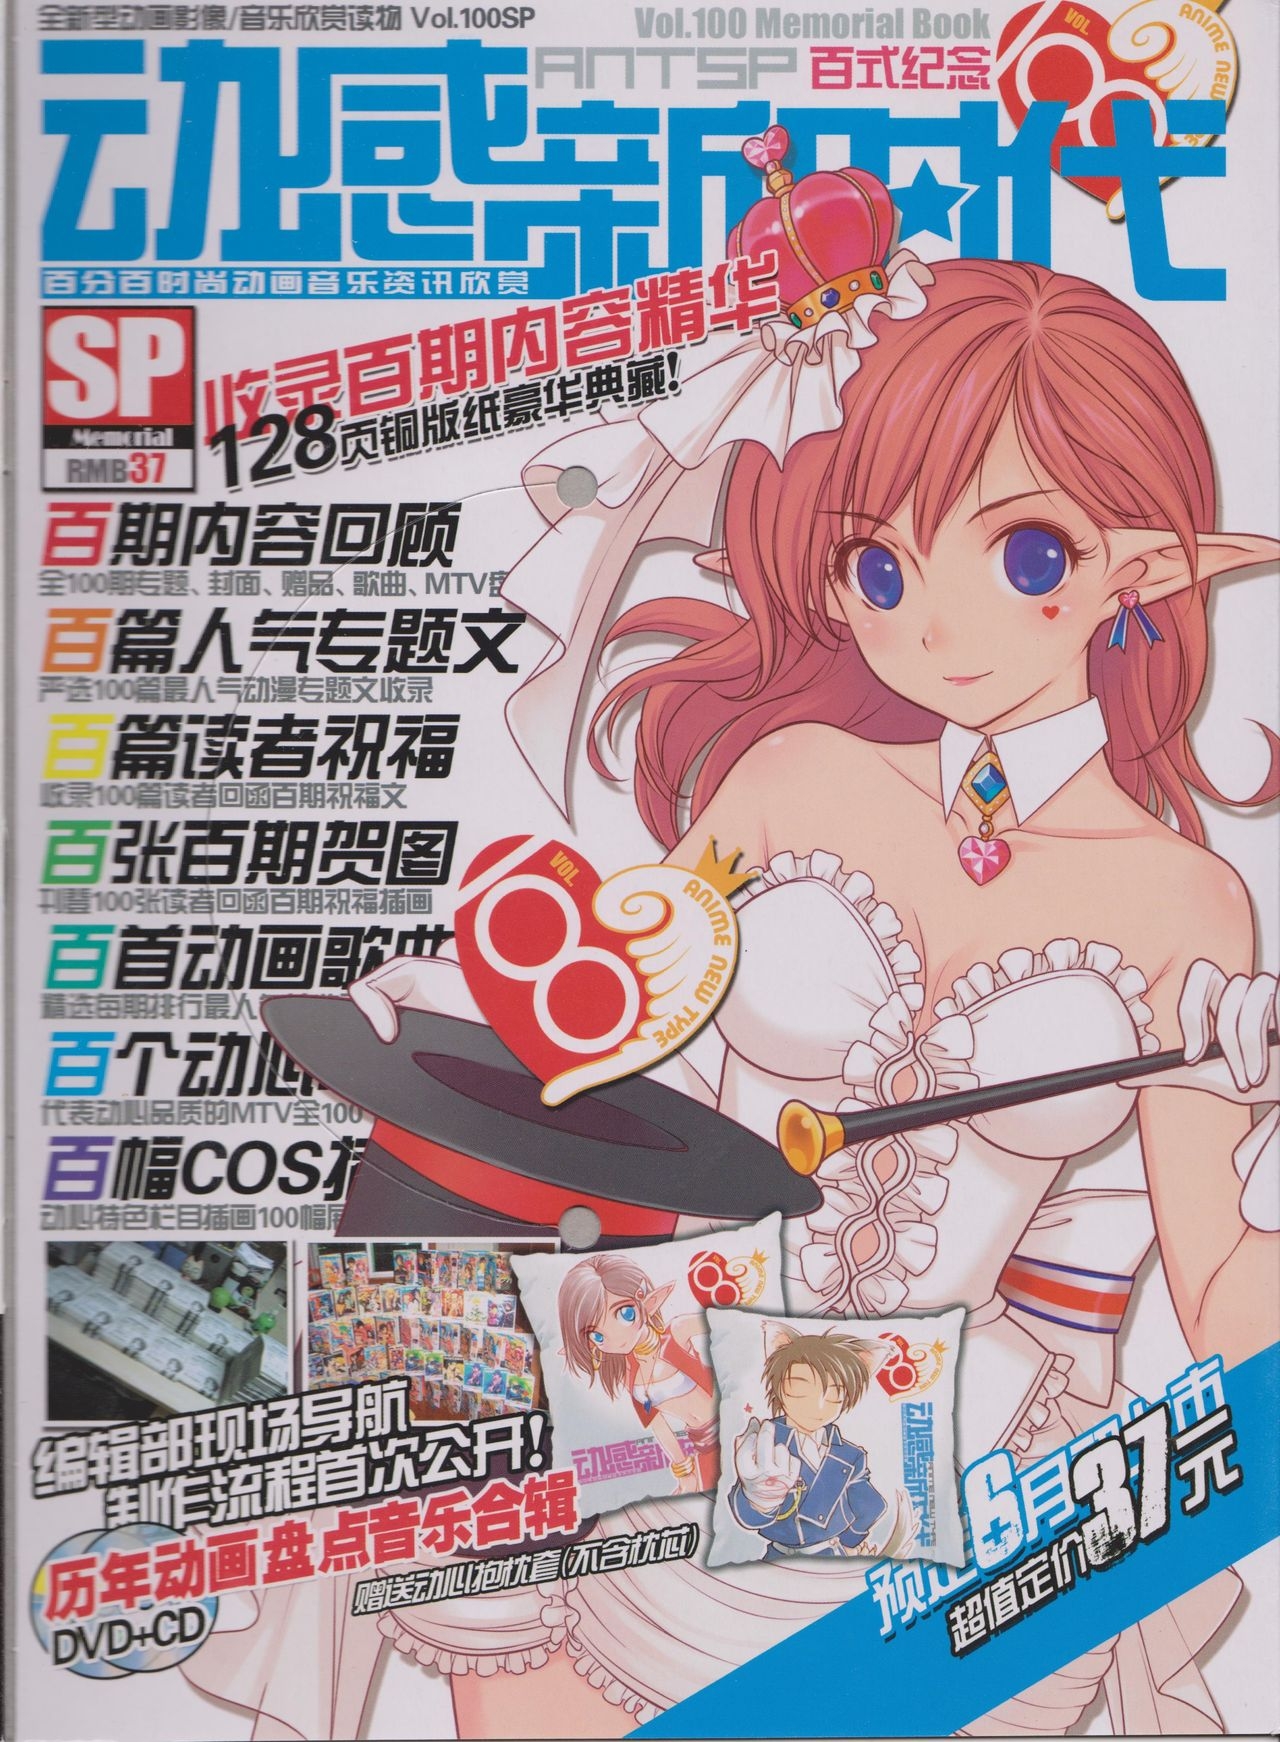 Anime New Type Vol.100 34